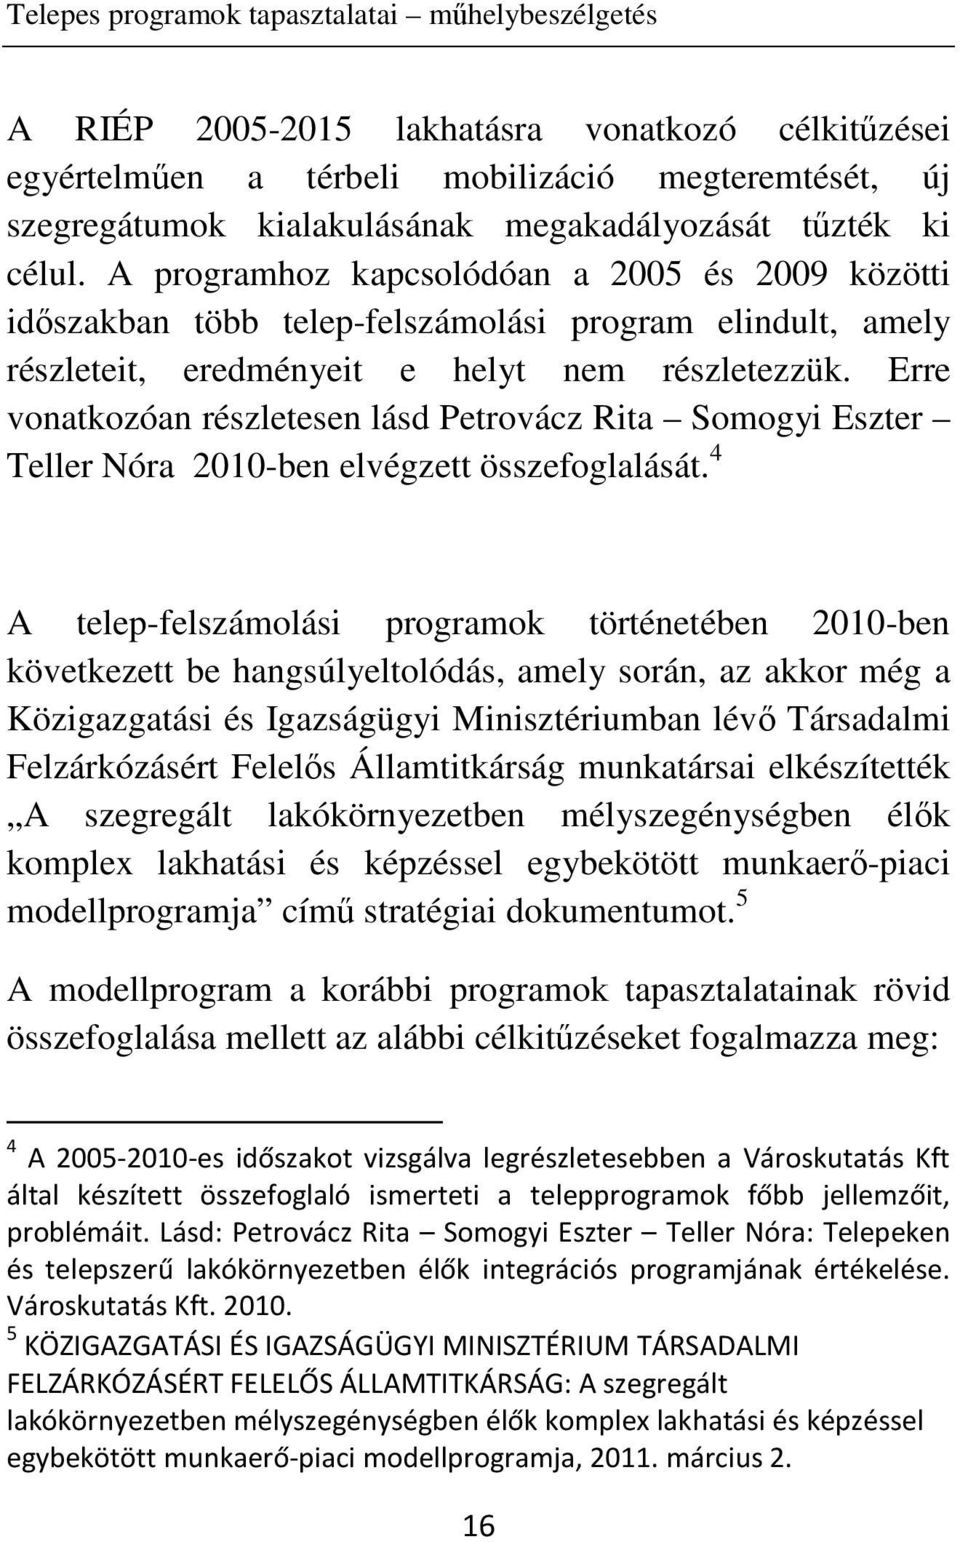 Erre vonatkozóan részletesen lásd Petrovácz Rita Somogyi Eszter Teller Nóra 2010-ben elvégzett összefoglalását.